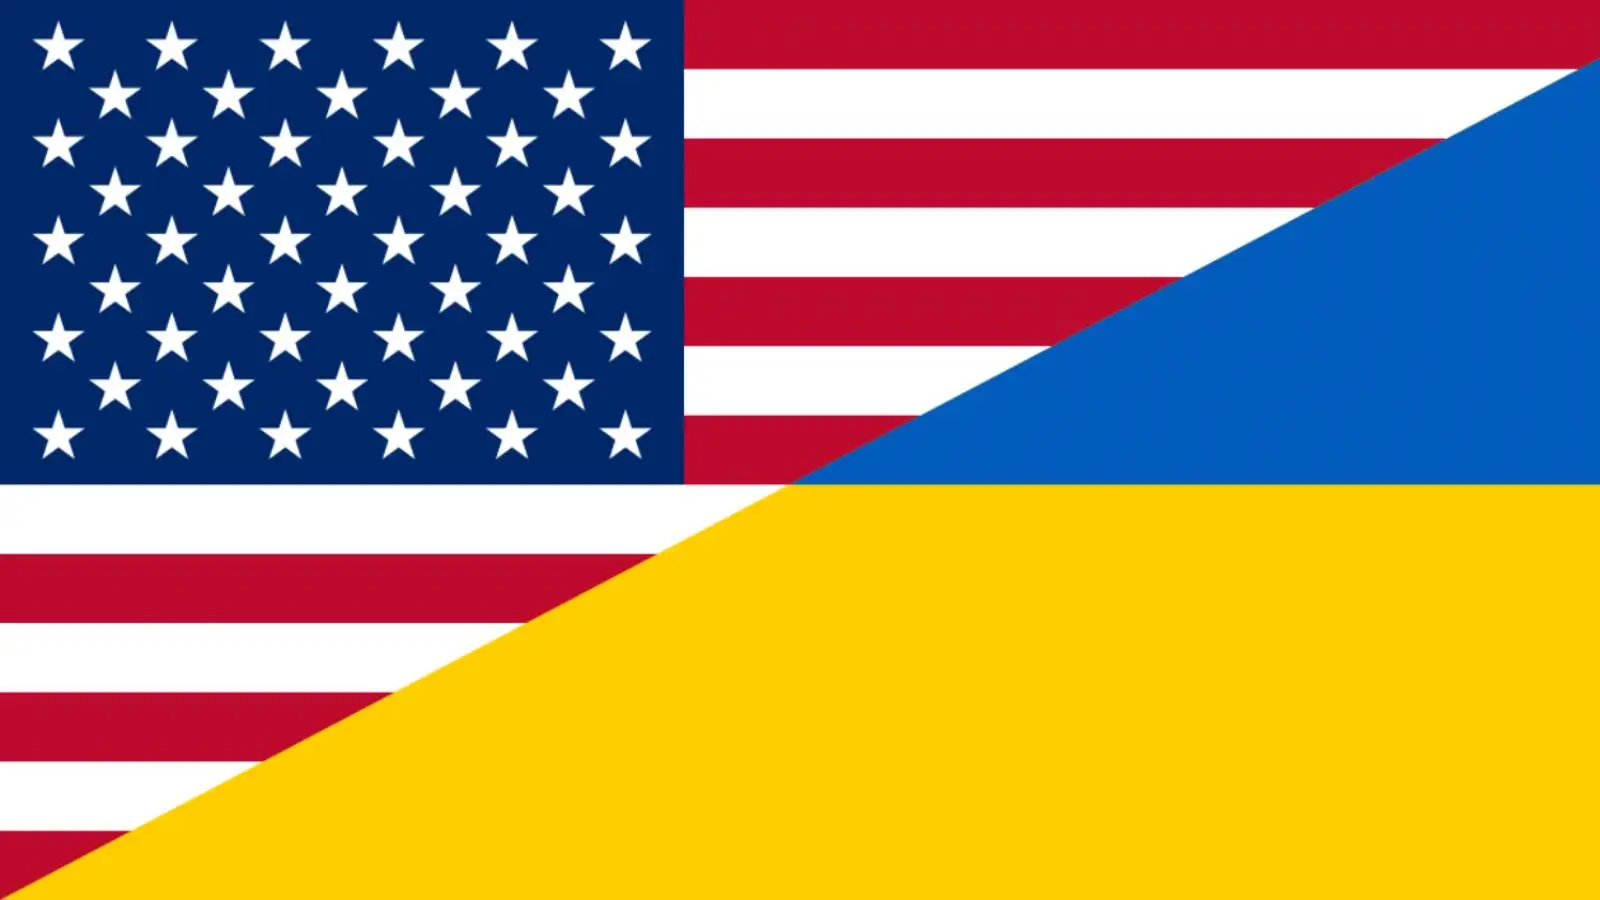 SUA va Trimite inca 18 HIMARS in Ucraina pentru a Sustine Contraofensivele